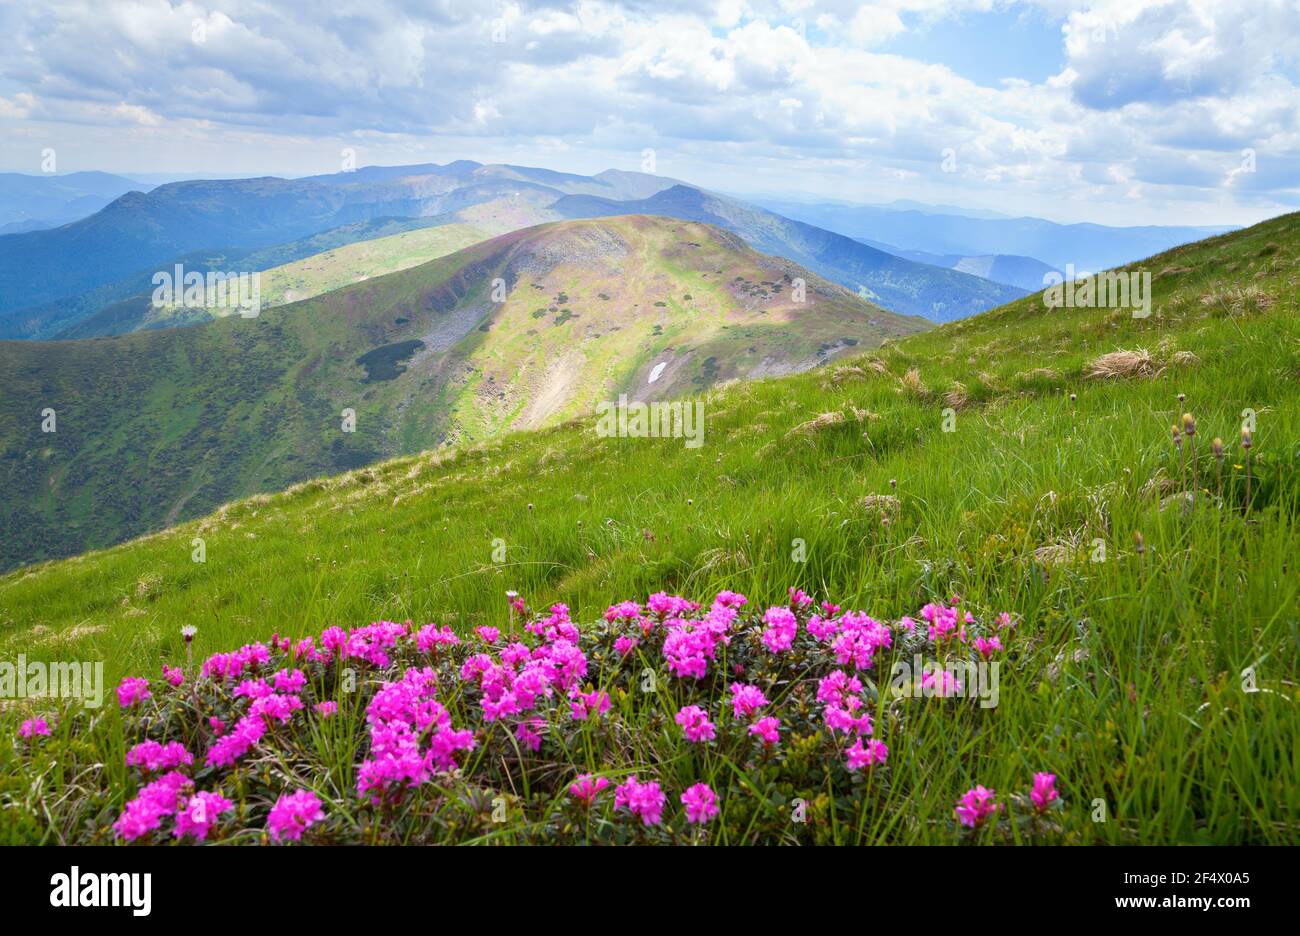 Catene Montuose Dei Carpazi Immagini e Fotos Stock - Alamy